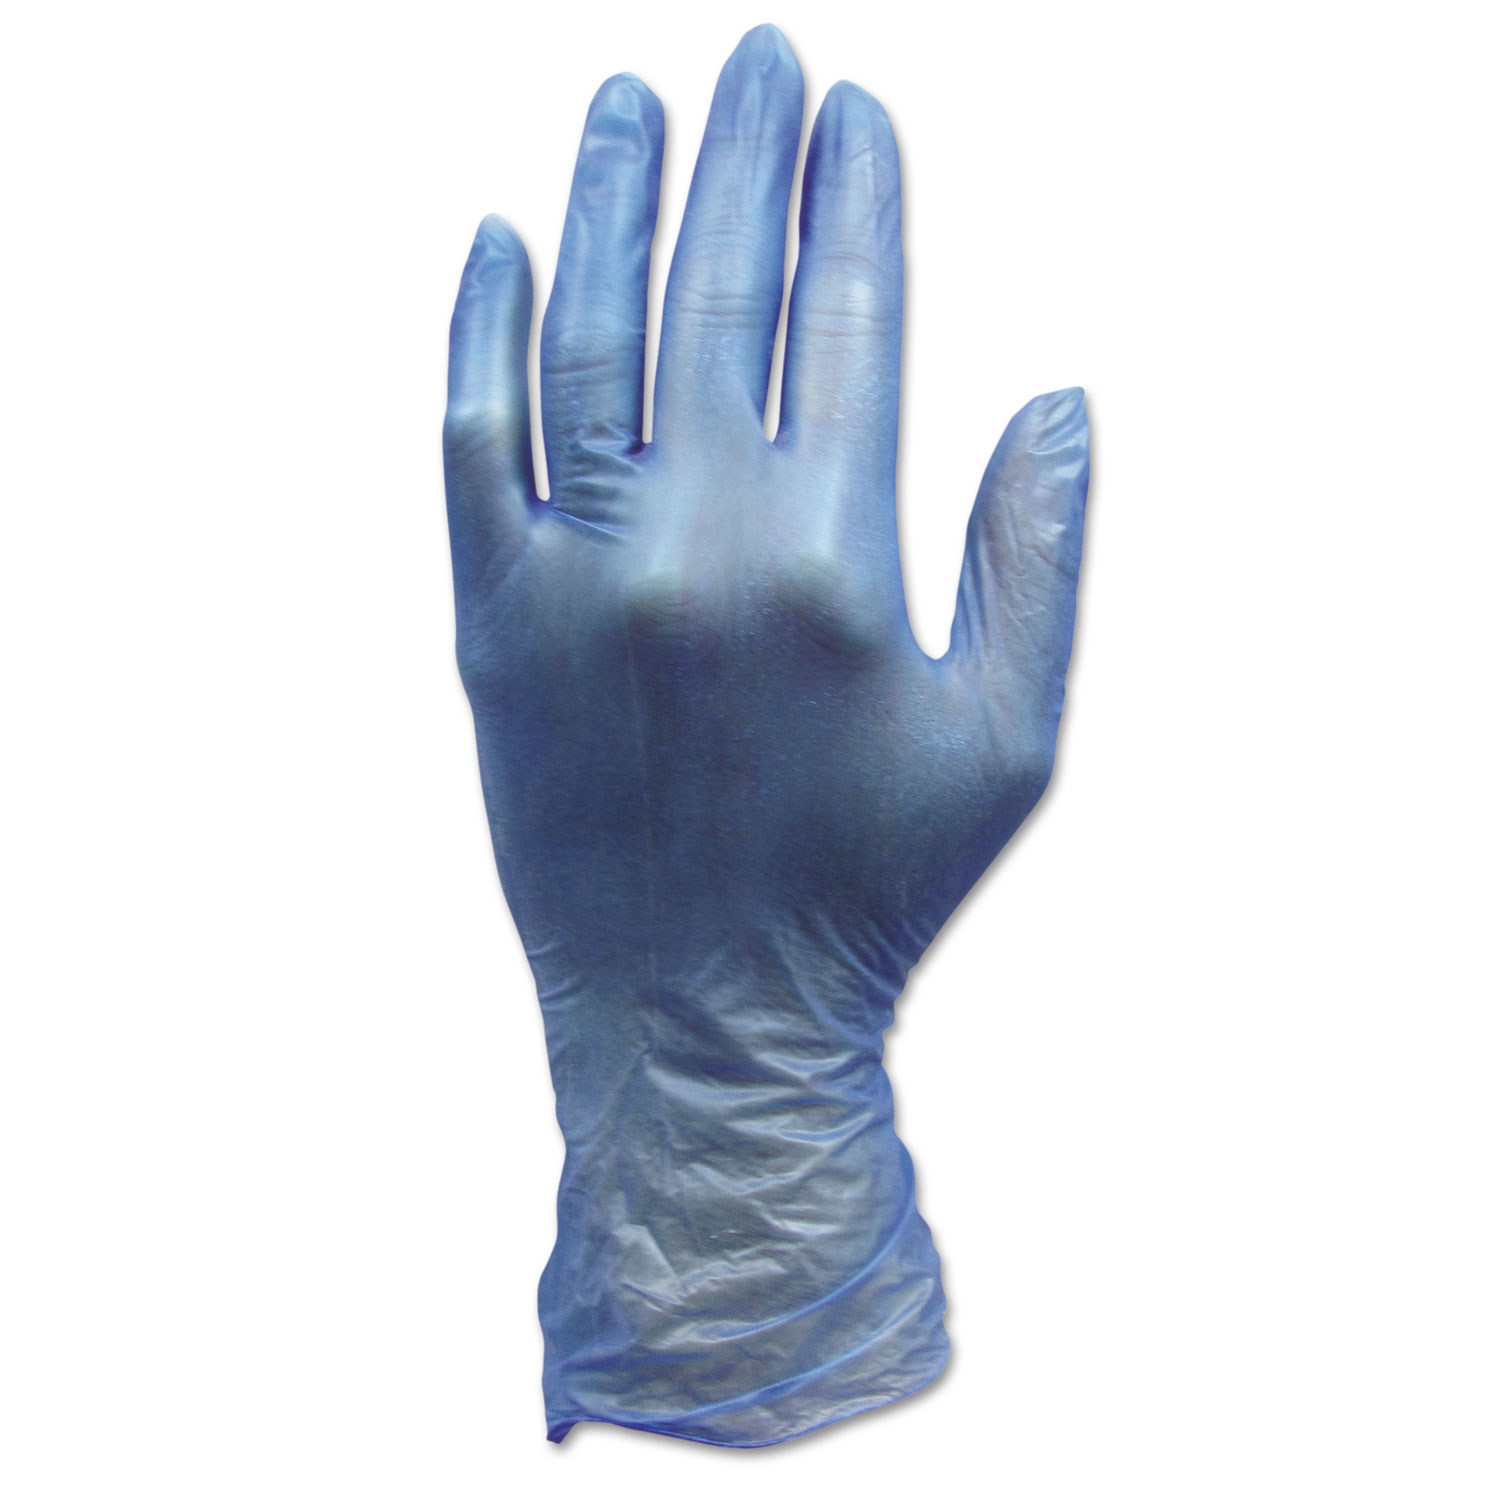  HOSPECO GL-V144FL ProWorks Industrial Disposable Vinyl Grade Gloves, Large, Blue, 1000/Carton (HOSGLV144FL) 